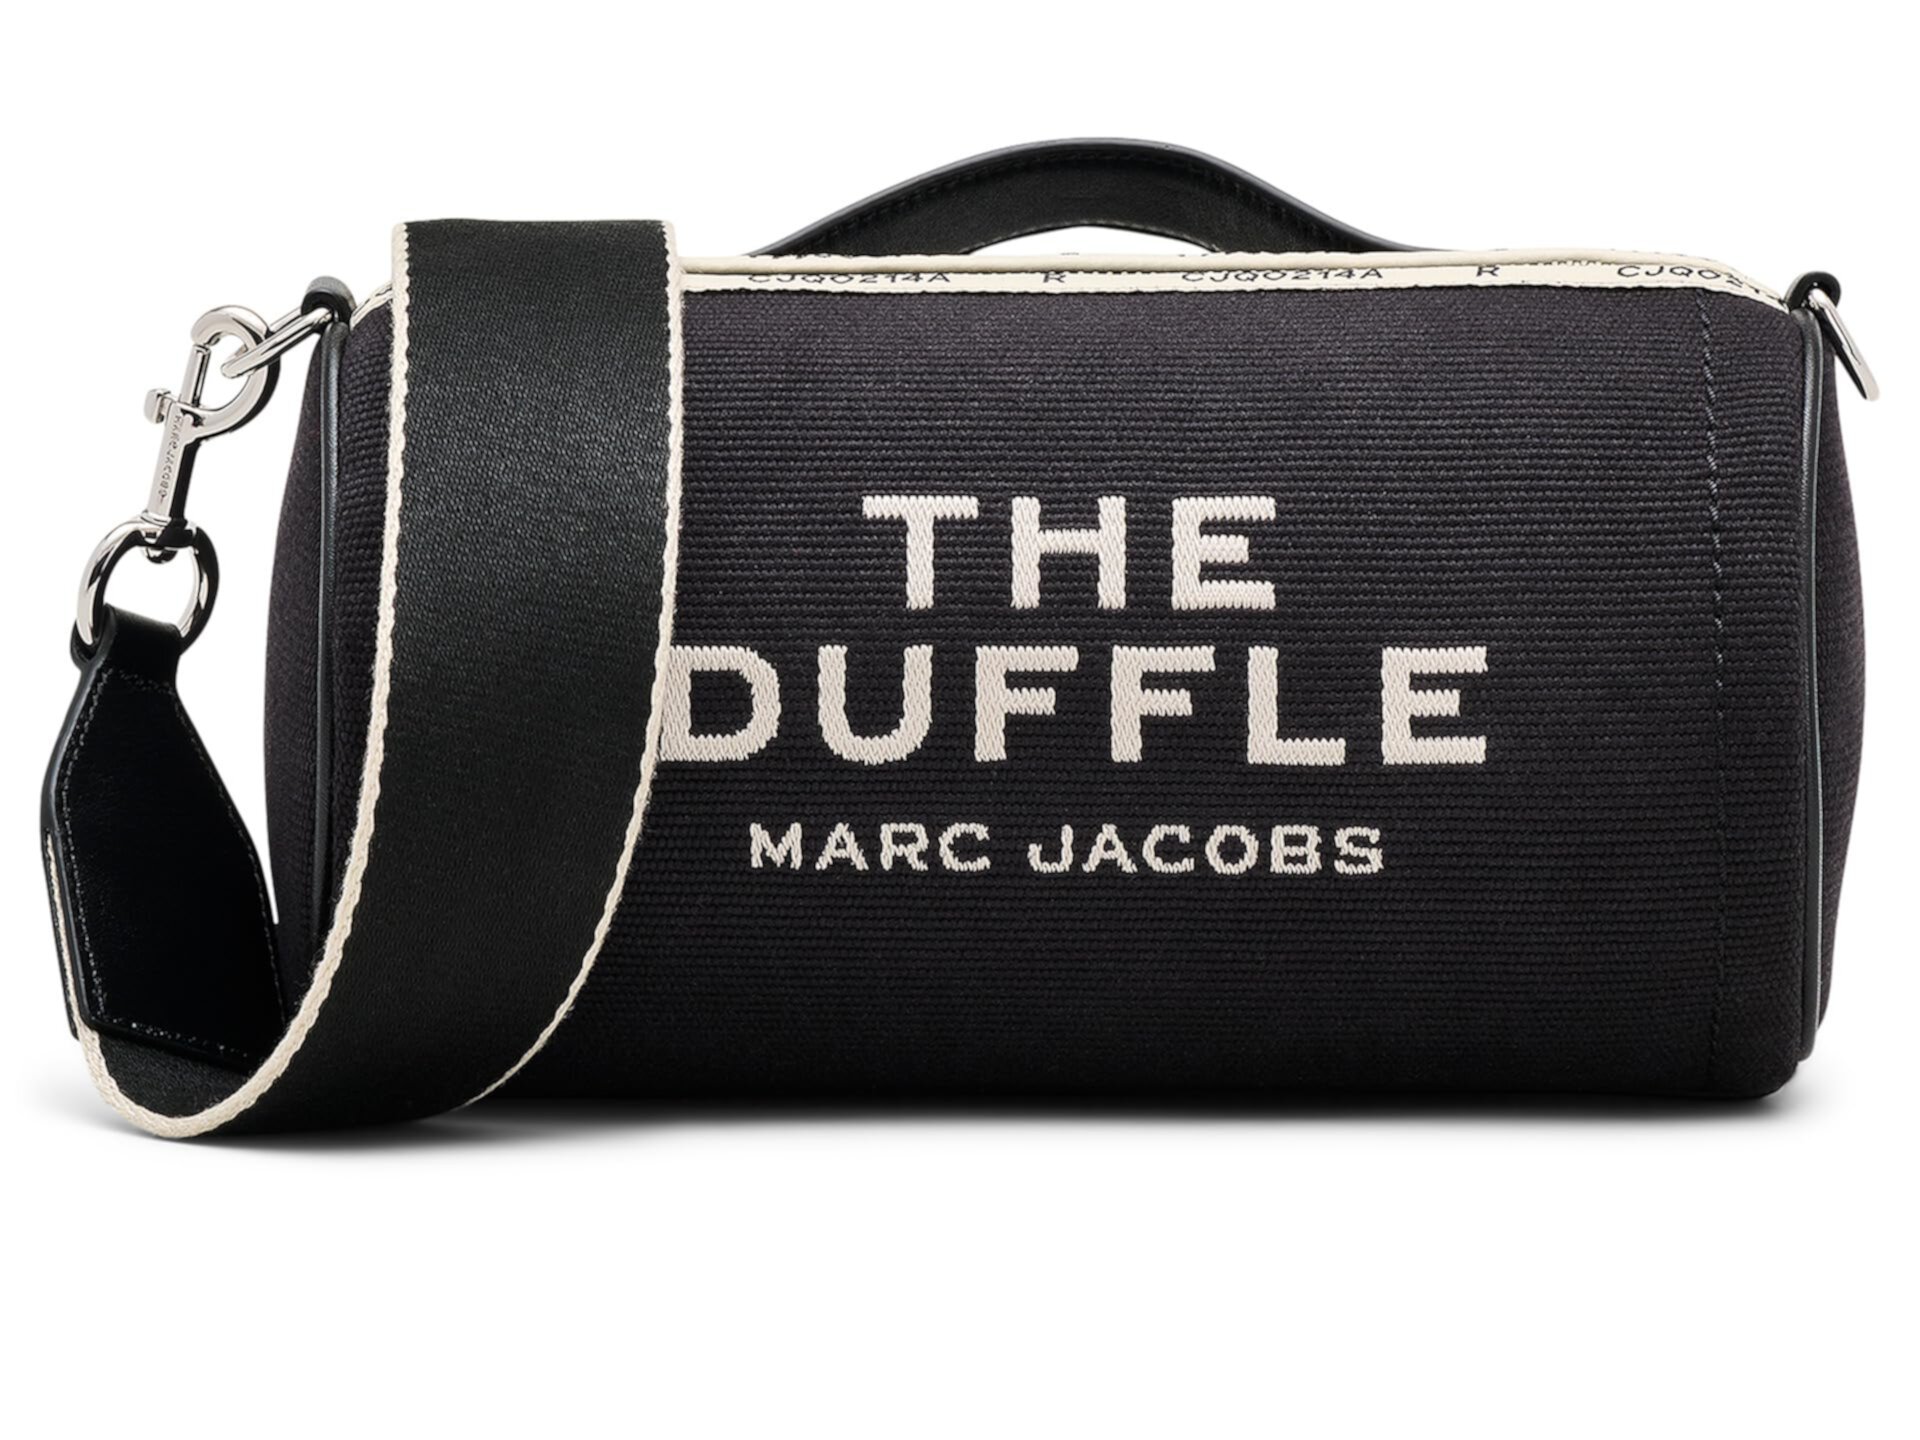 Жаккардовая спортивная сумка Marc Jacobs